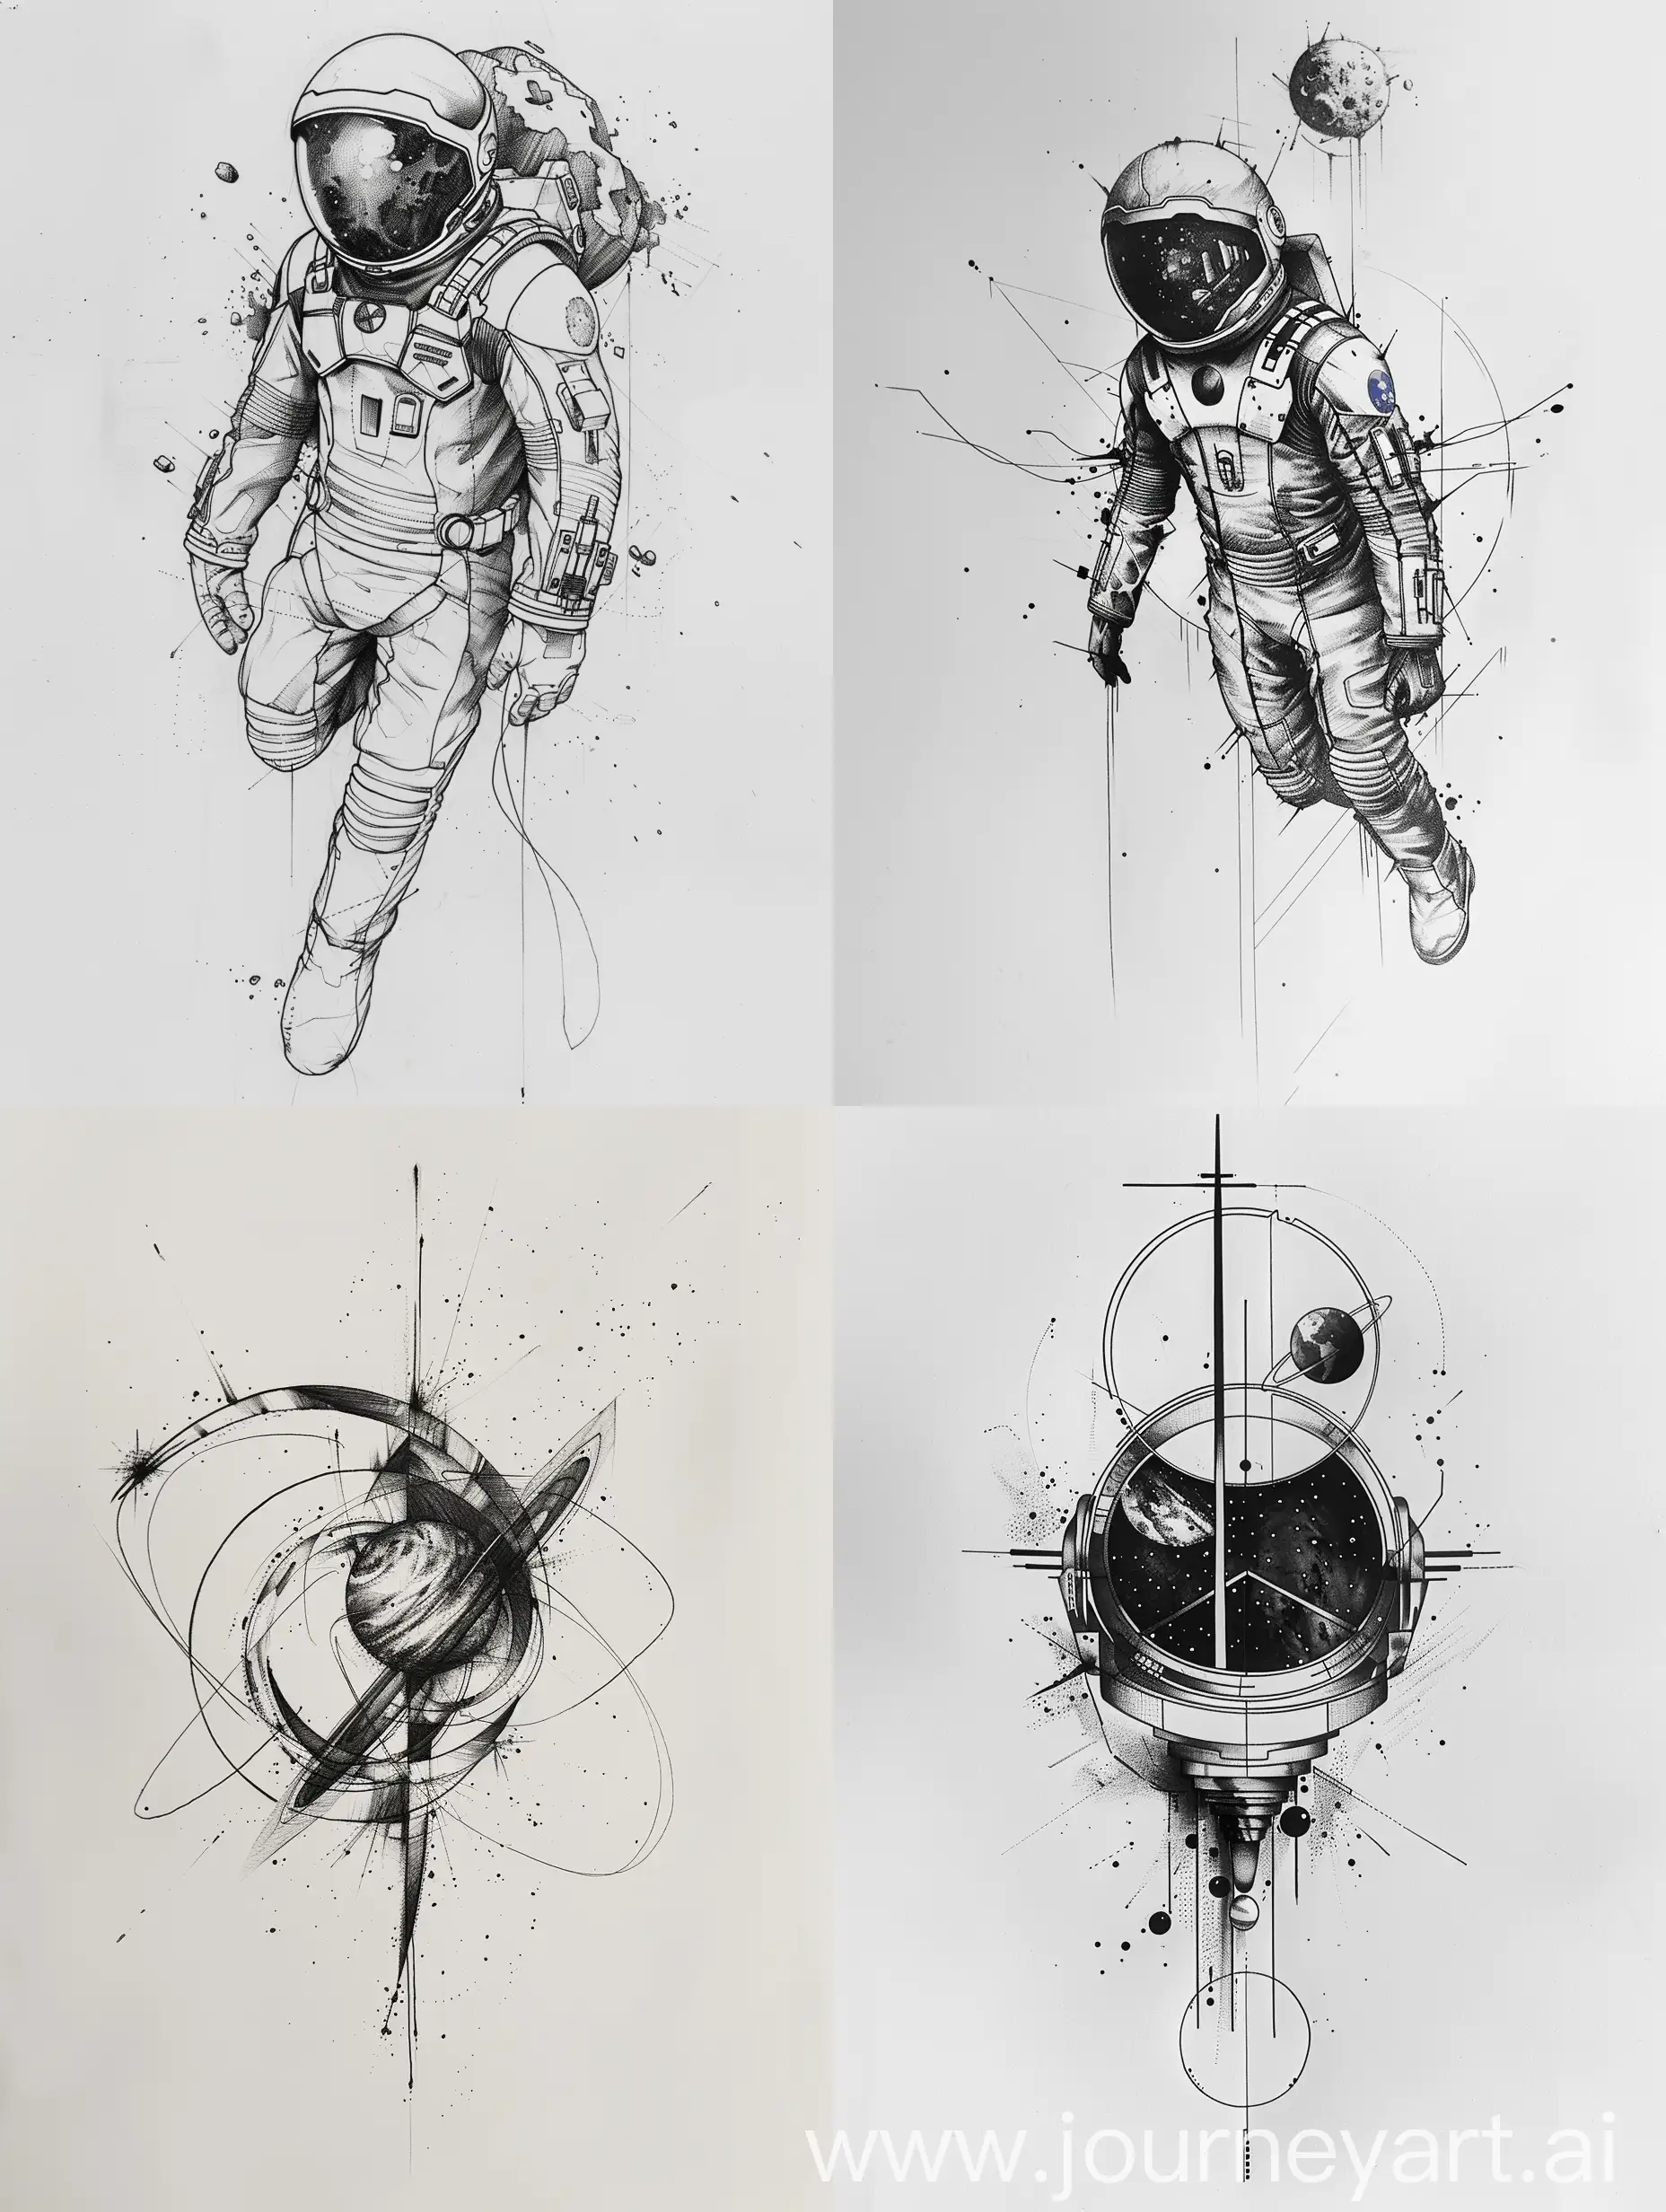 interstellar movie, minimalist tattoo design sketch, white background

